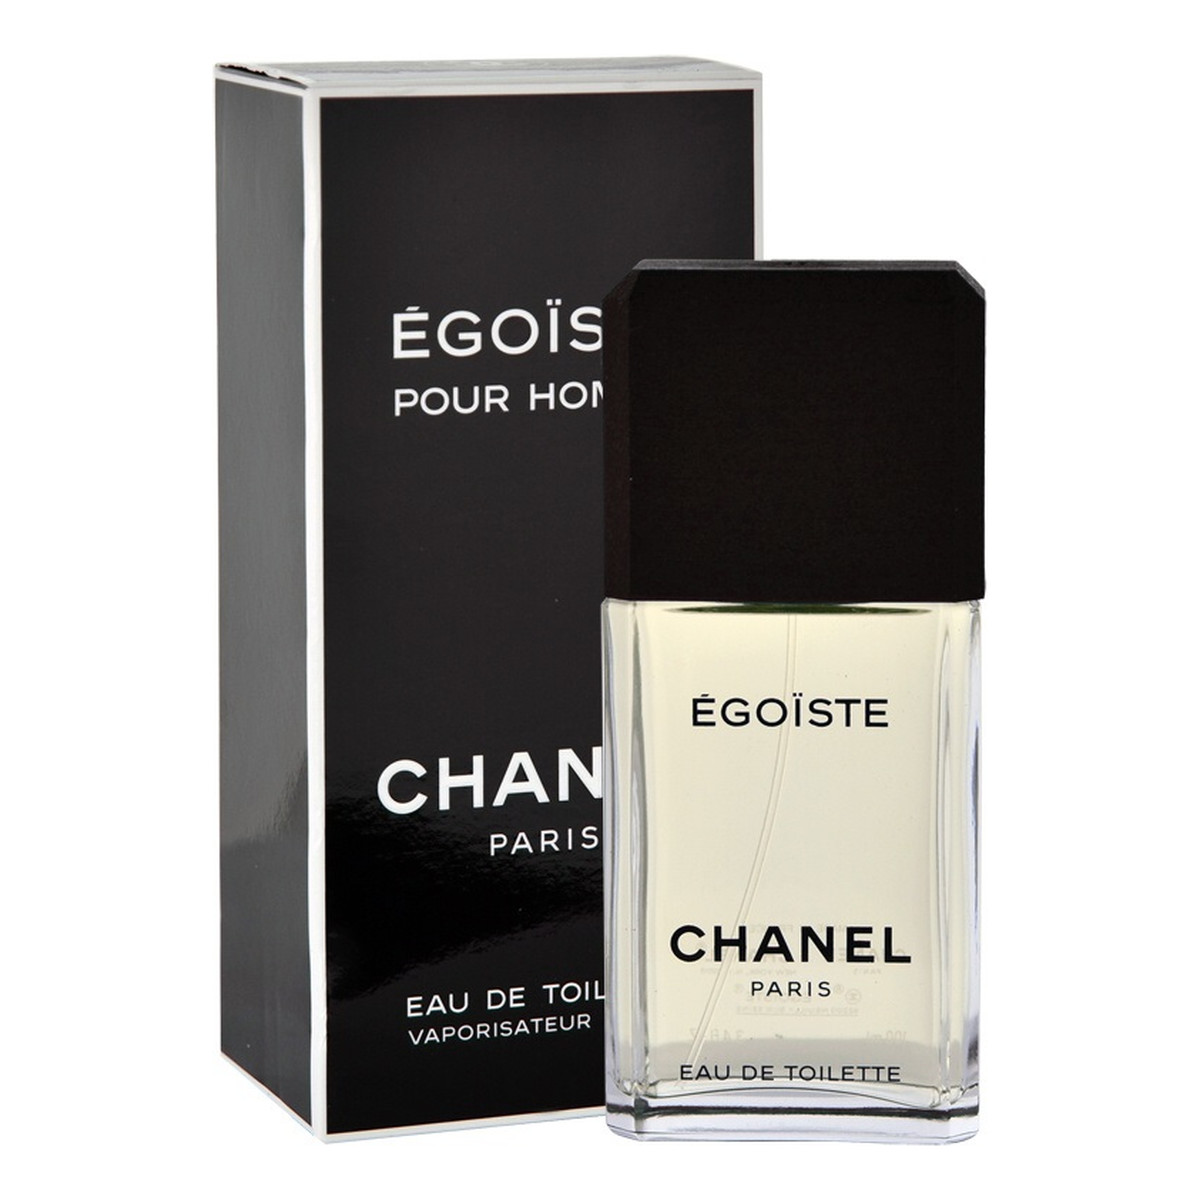 Chanel Egoiste Pour Homme woda toaletowa dla mężczyzn 100ml